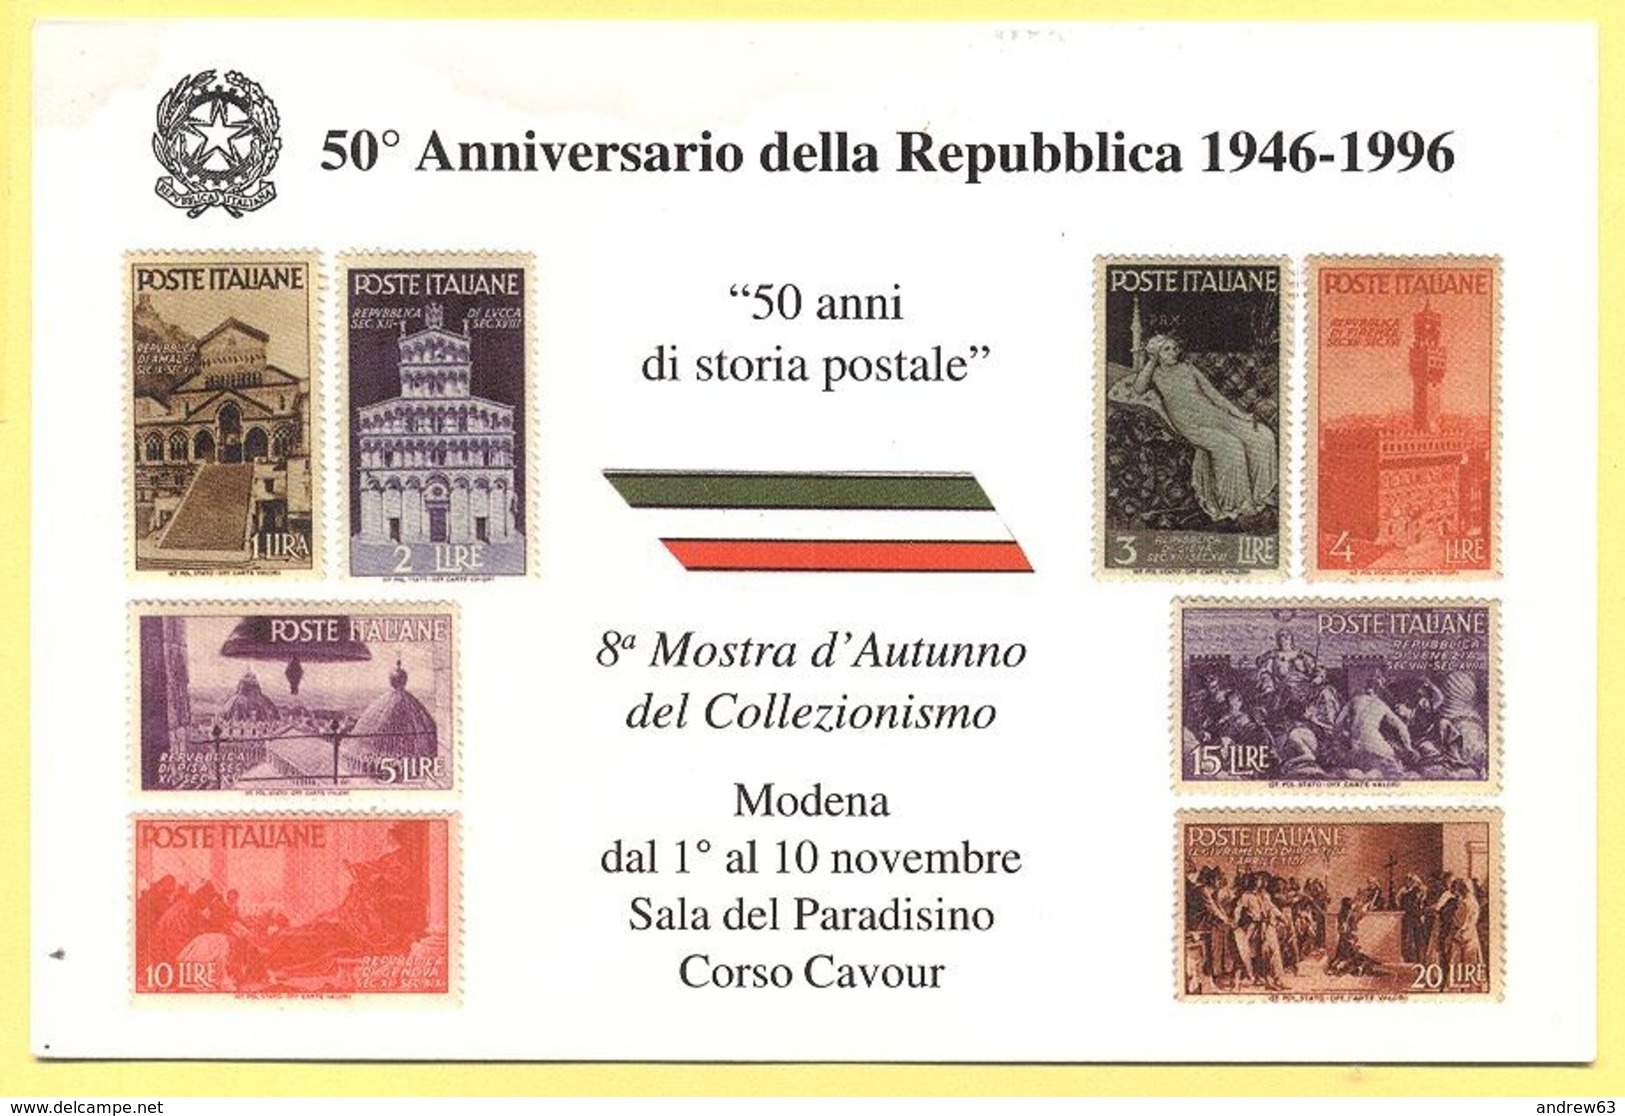 Tematica - Manifestazioni - 1996 - 50° Anniversario Della Repubblica 1946-1996 - 8a Mostra D'Autunno Del Collezionismo - - Manifestazioni